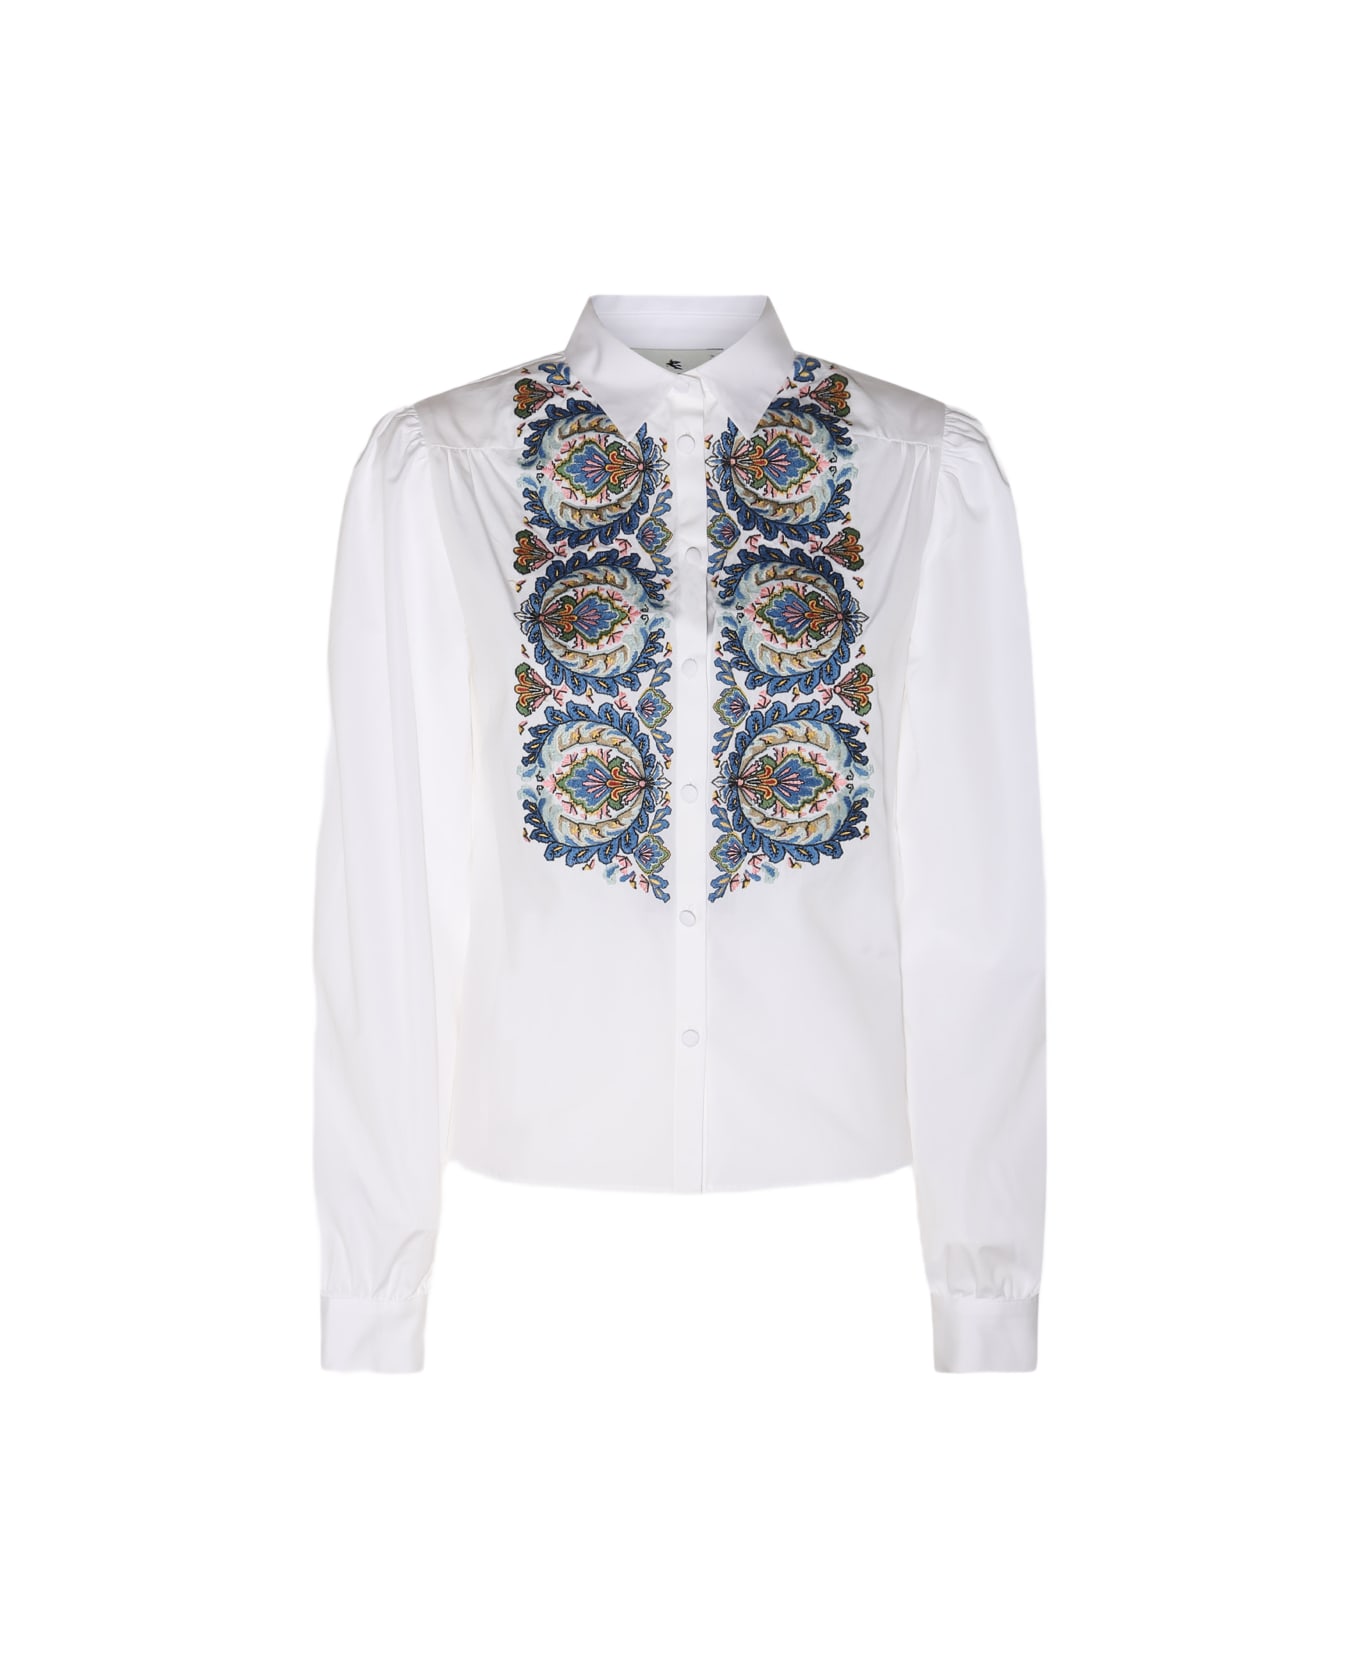 Etro White Cotton Embroidered Shirt - White